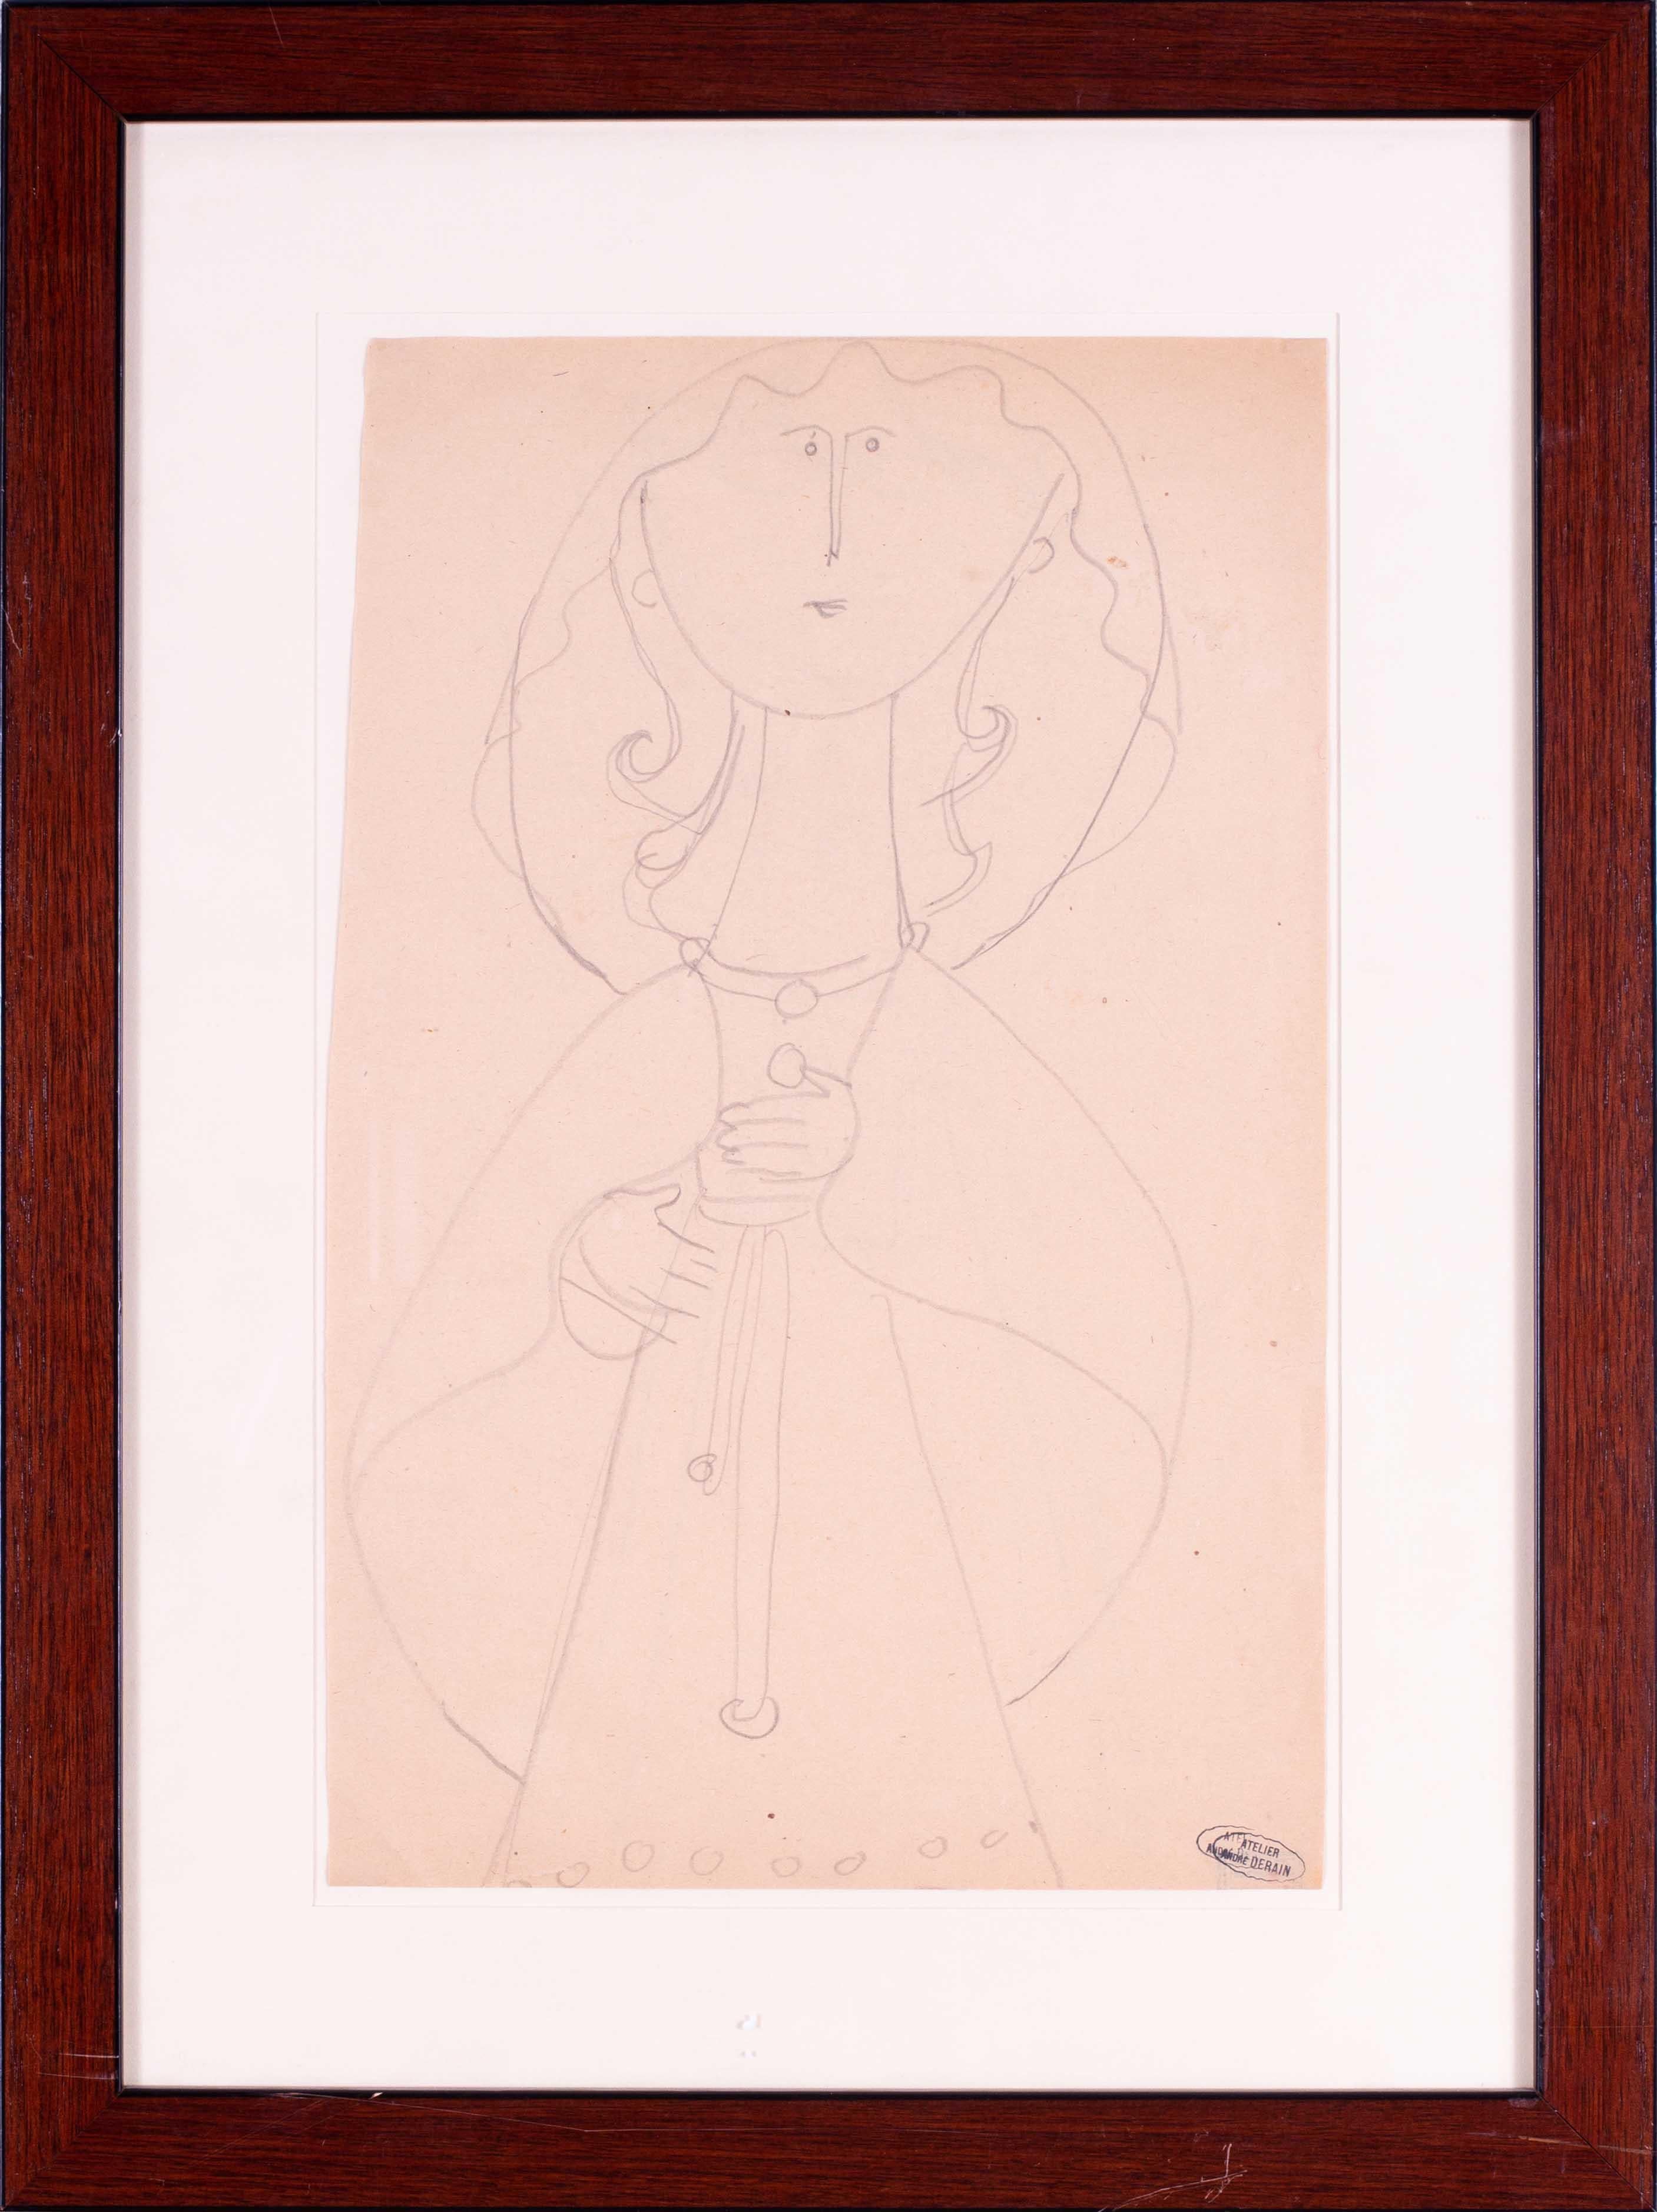 Französisches Fauvismus des frühen 20. Jahrhunderts, Zeichnung von Andre Derain von einer Dame in einem Kleid